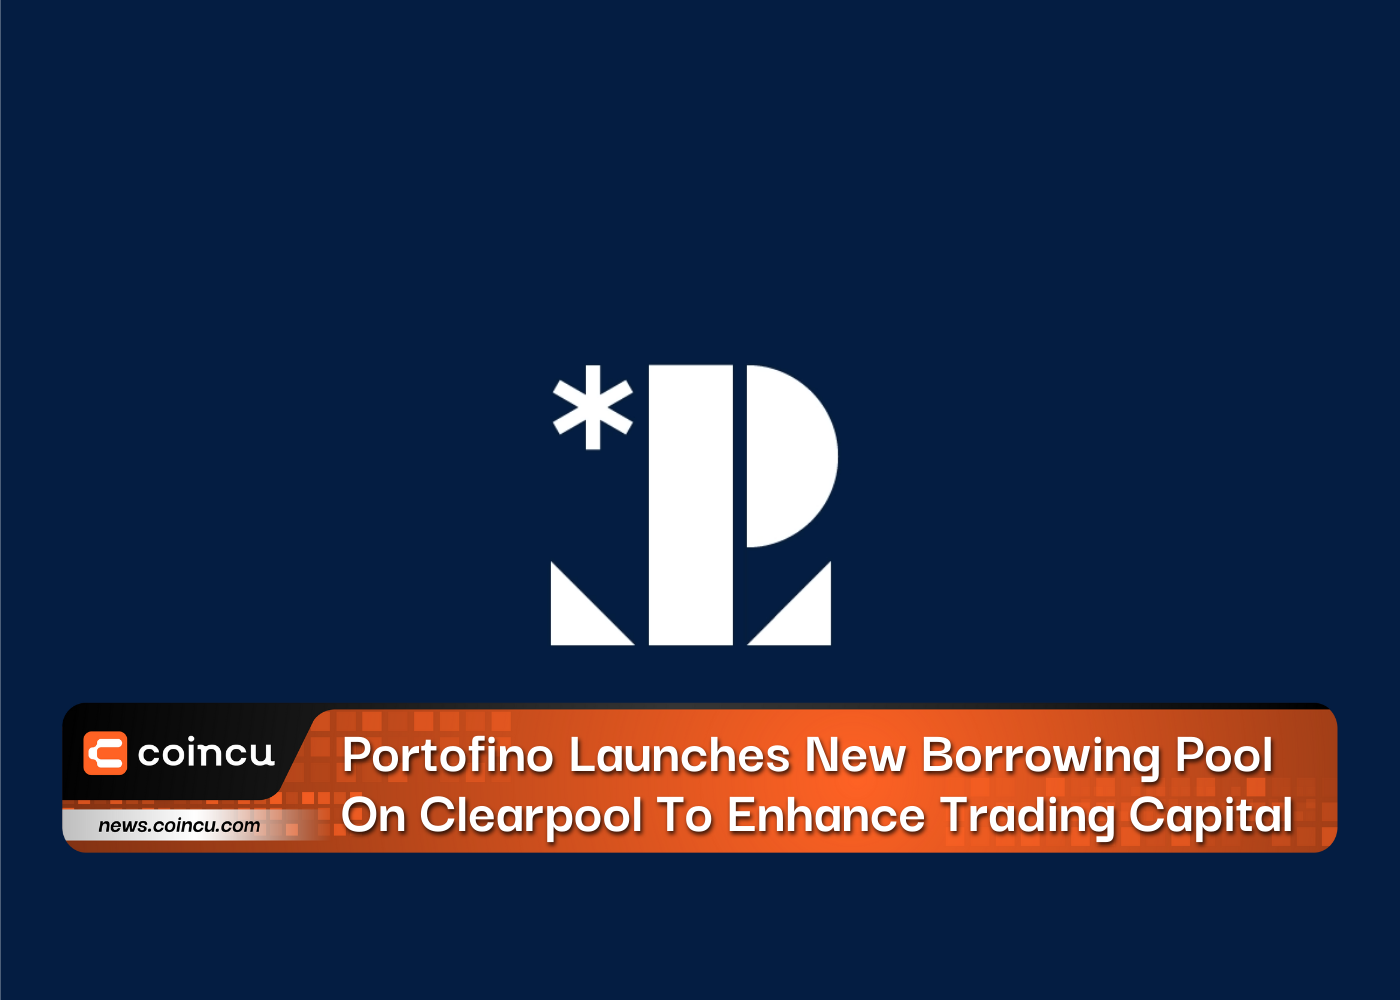 Portofino lança novo pool de empréstimos em Clearpool para aumentar o capital comercial